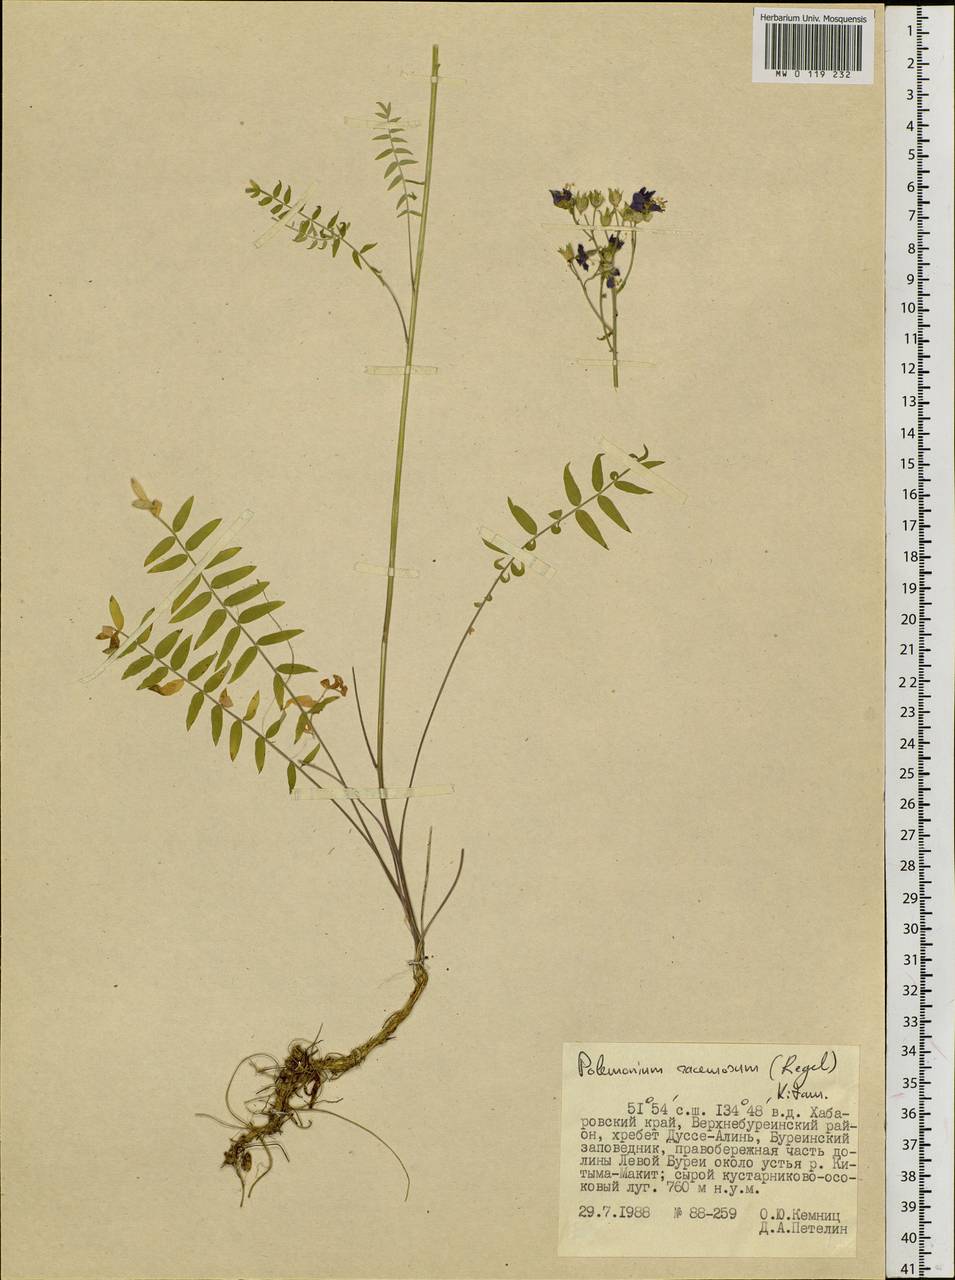 Polemonium caeruleum subsp. kiushianum (Kitam.) Hara, Siberia, Russian Far East (S6) (Russia)